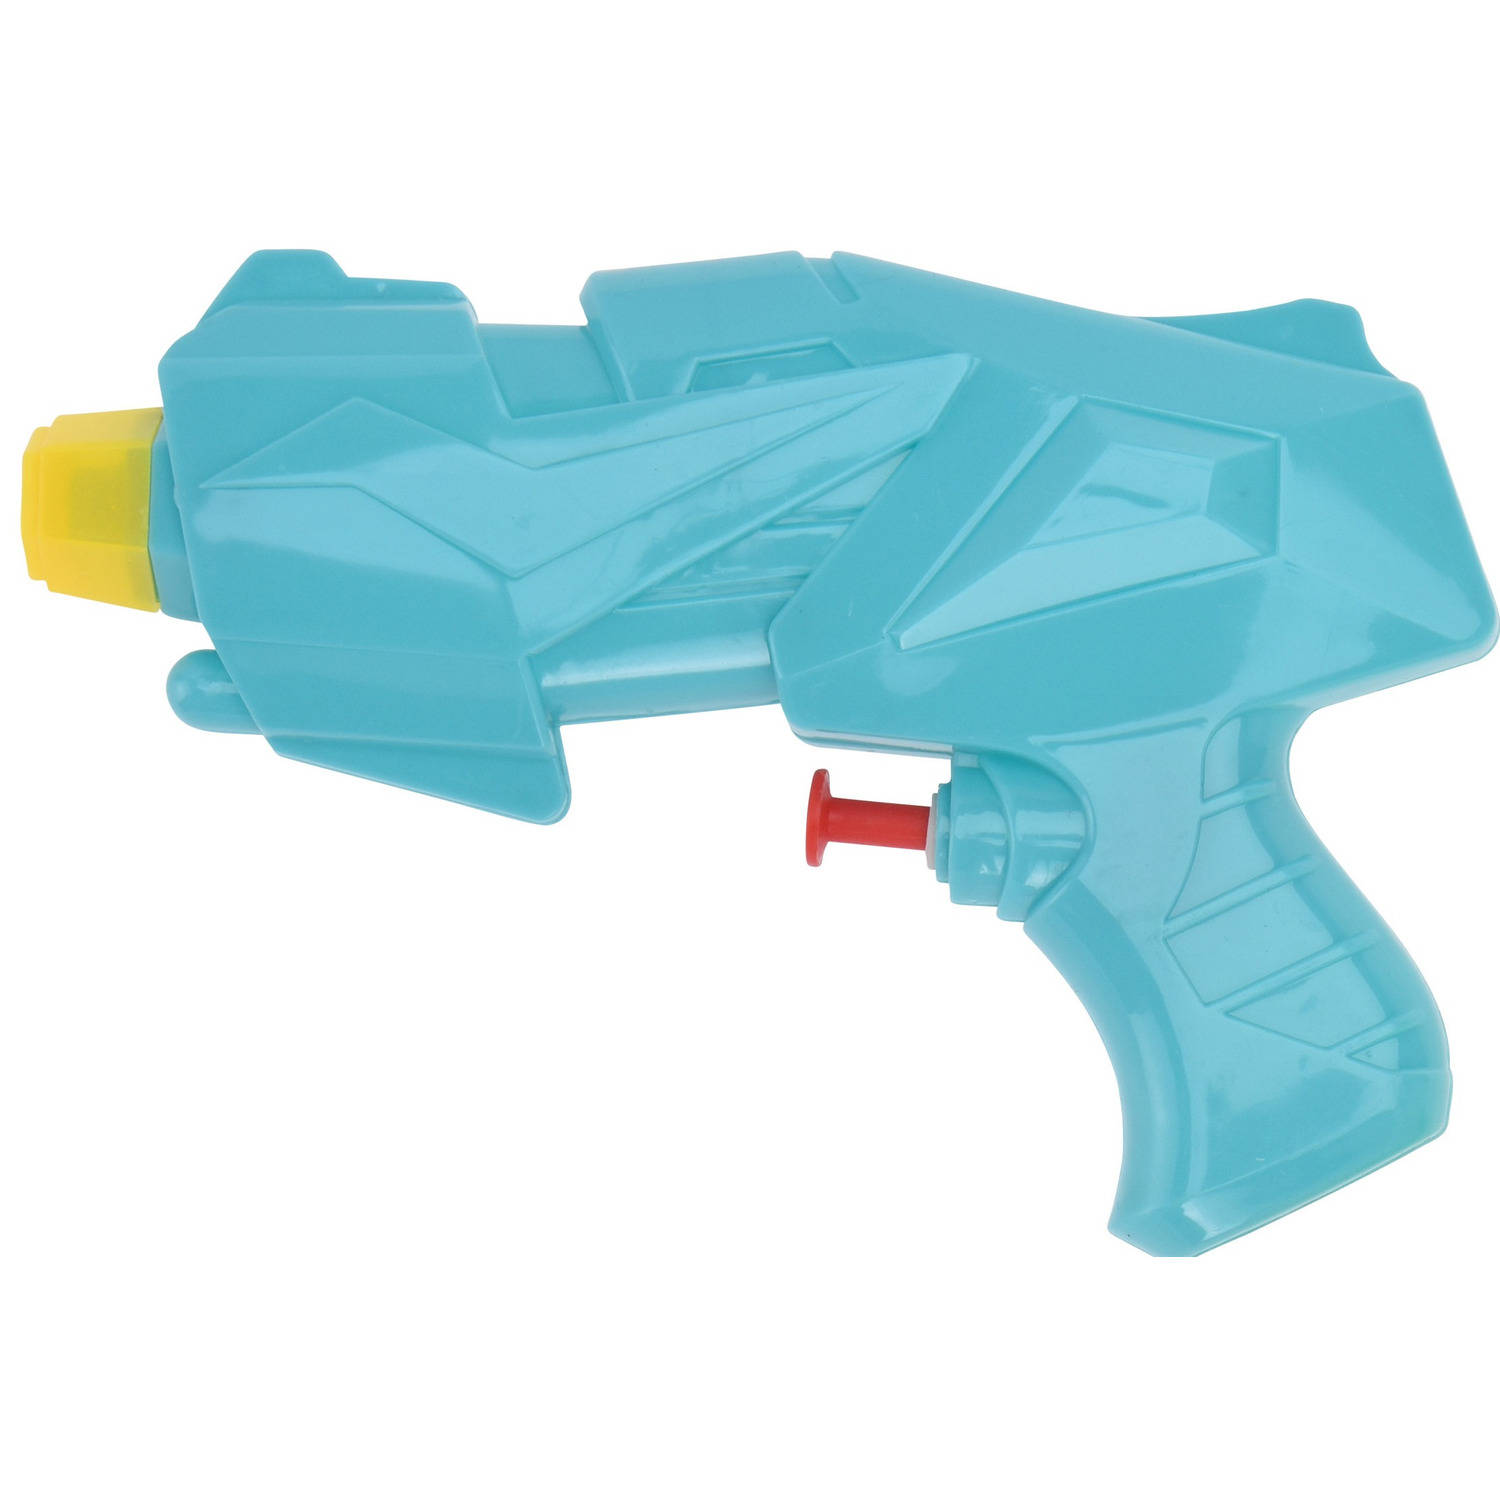 1x Mini Waterpistolen/waterpistool Van 15 Cm Kinderspeelgoed - Waterspeelgoed Van Kunststof - Kleine Waterpistolen - Blauw